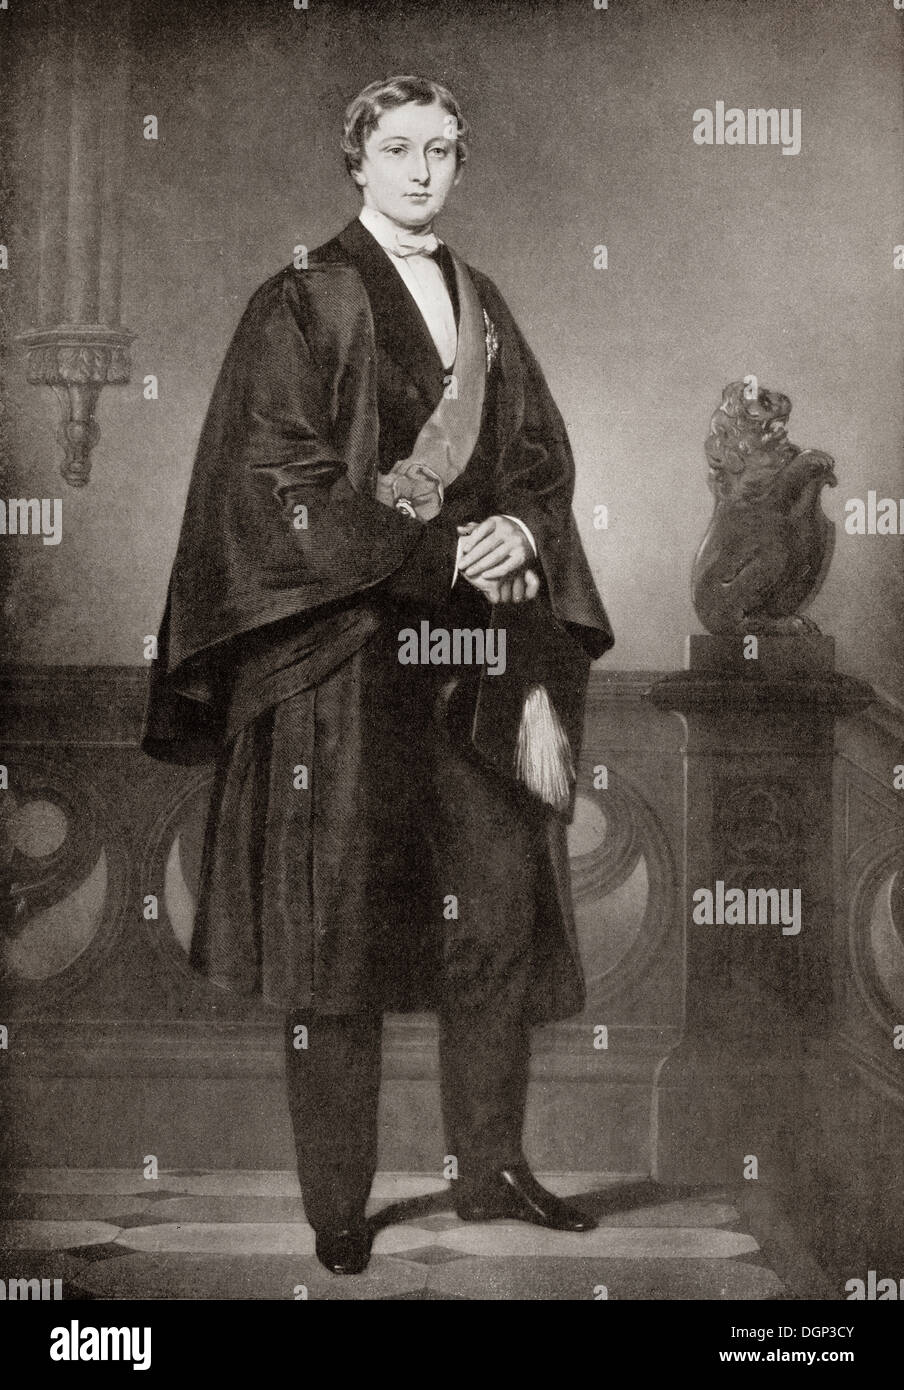 Albert Edward, Príncipe de Gales, 1841 - 1910, el futuro Rey Eduardo VII, visto aquí como un estudiante de Oxford. Foto de stock